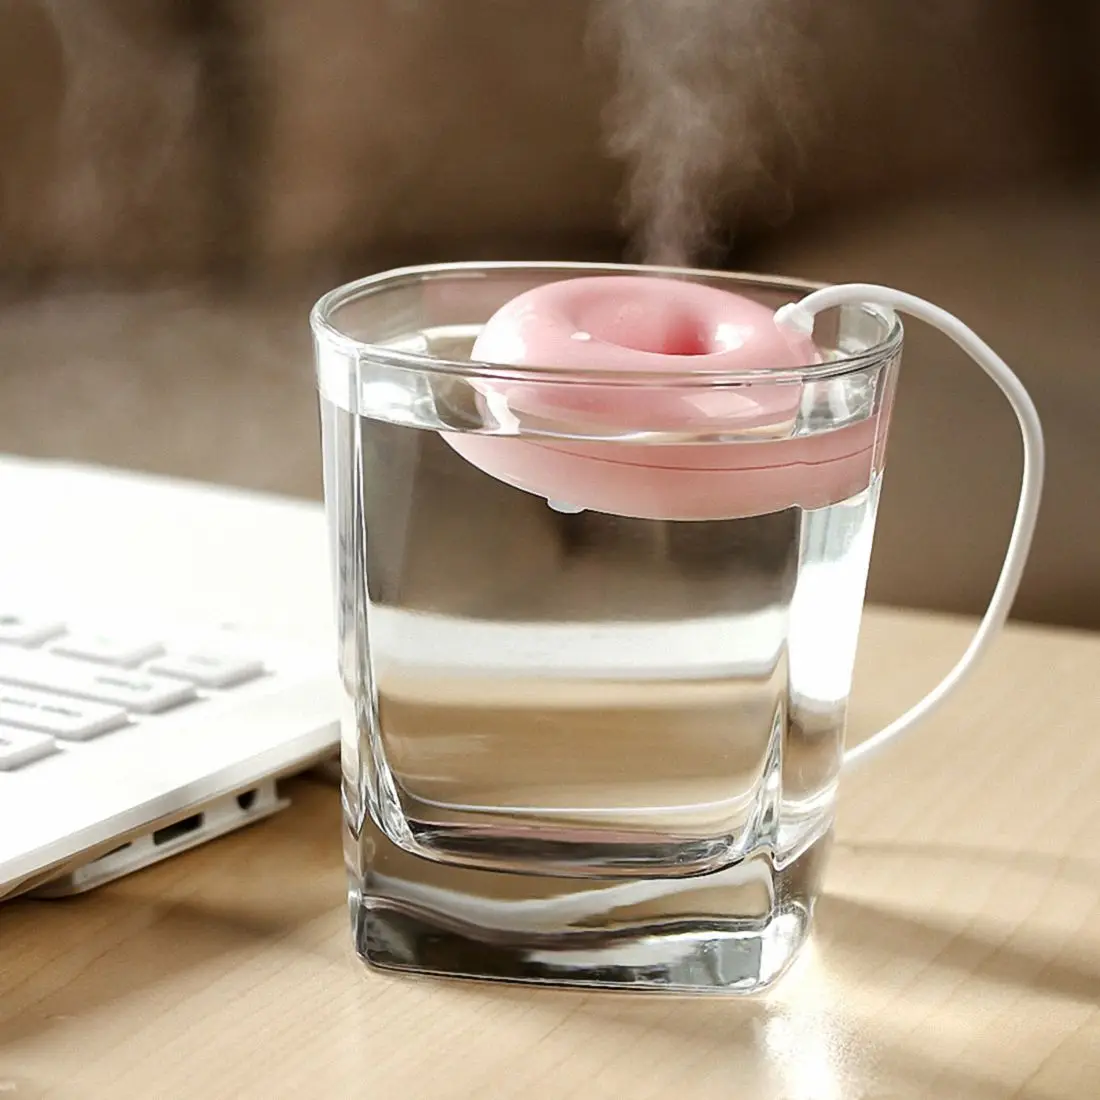 Розовый пончик увлажнитель usb офисный настольный мини-увлажнитель портативный креативный очиститель воздуха розовый